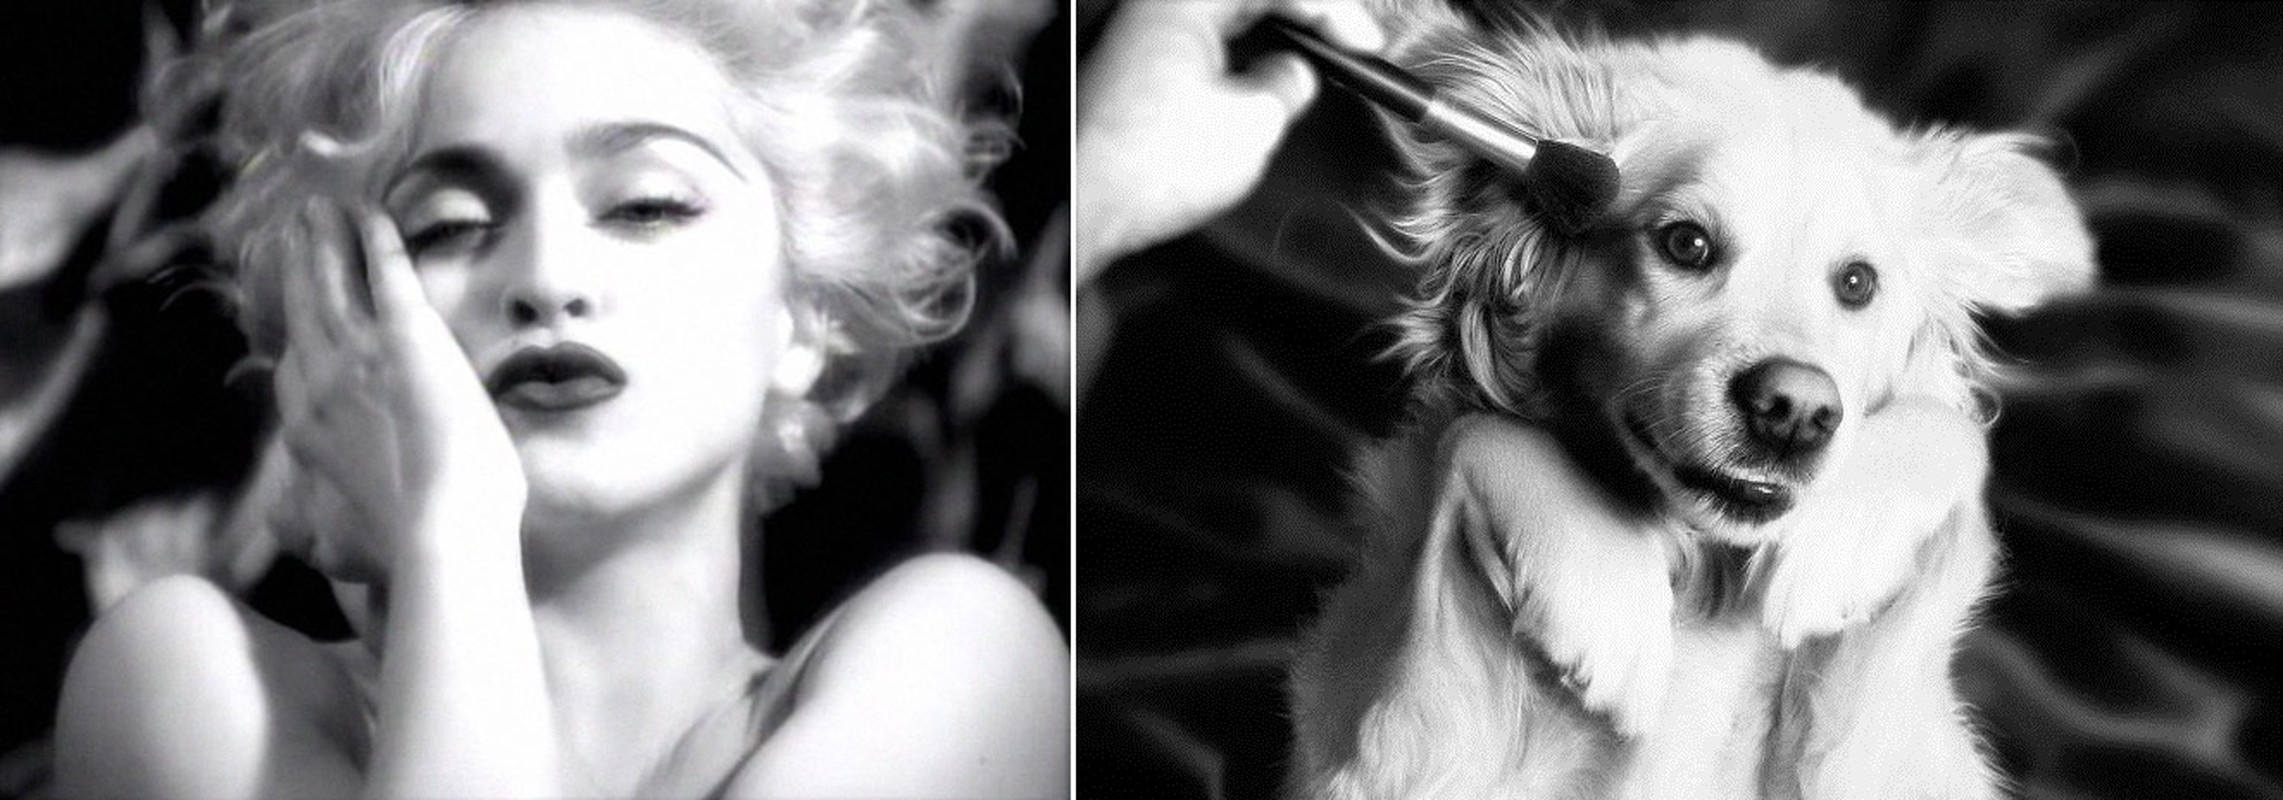 Cho hoa trang thanh nu hoang nhac Pop Madonna an tuong-Hinh-7